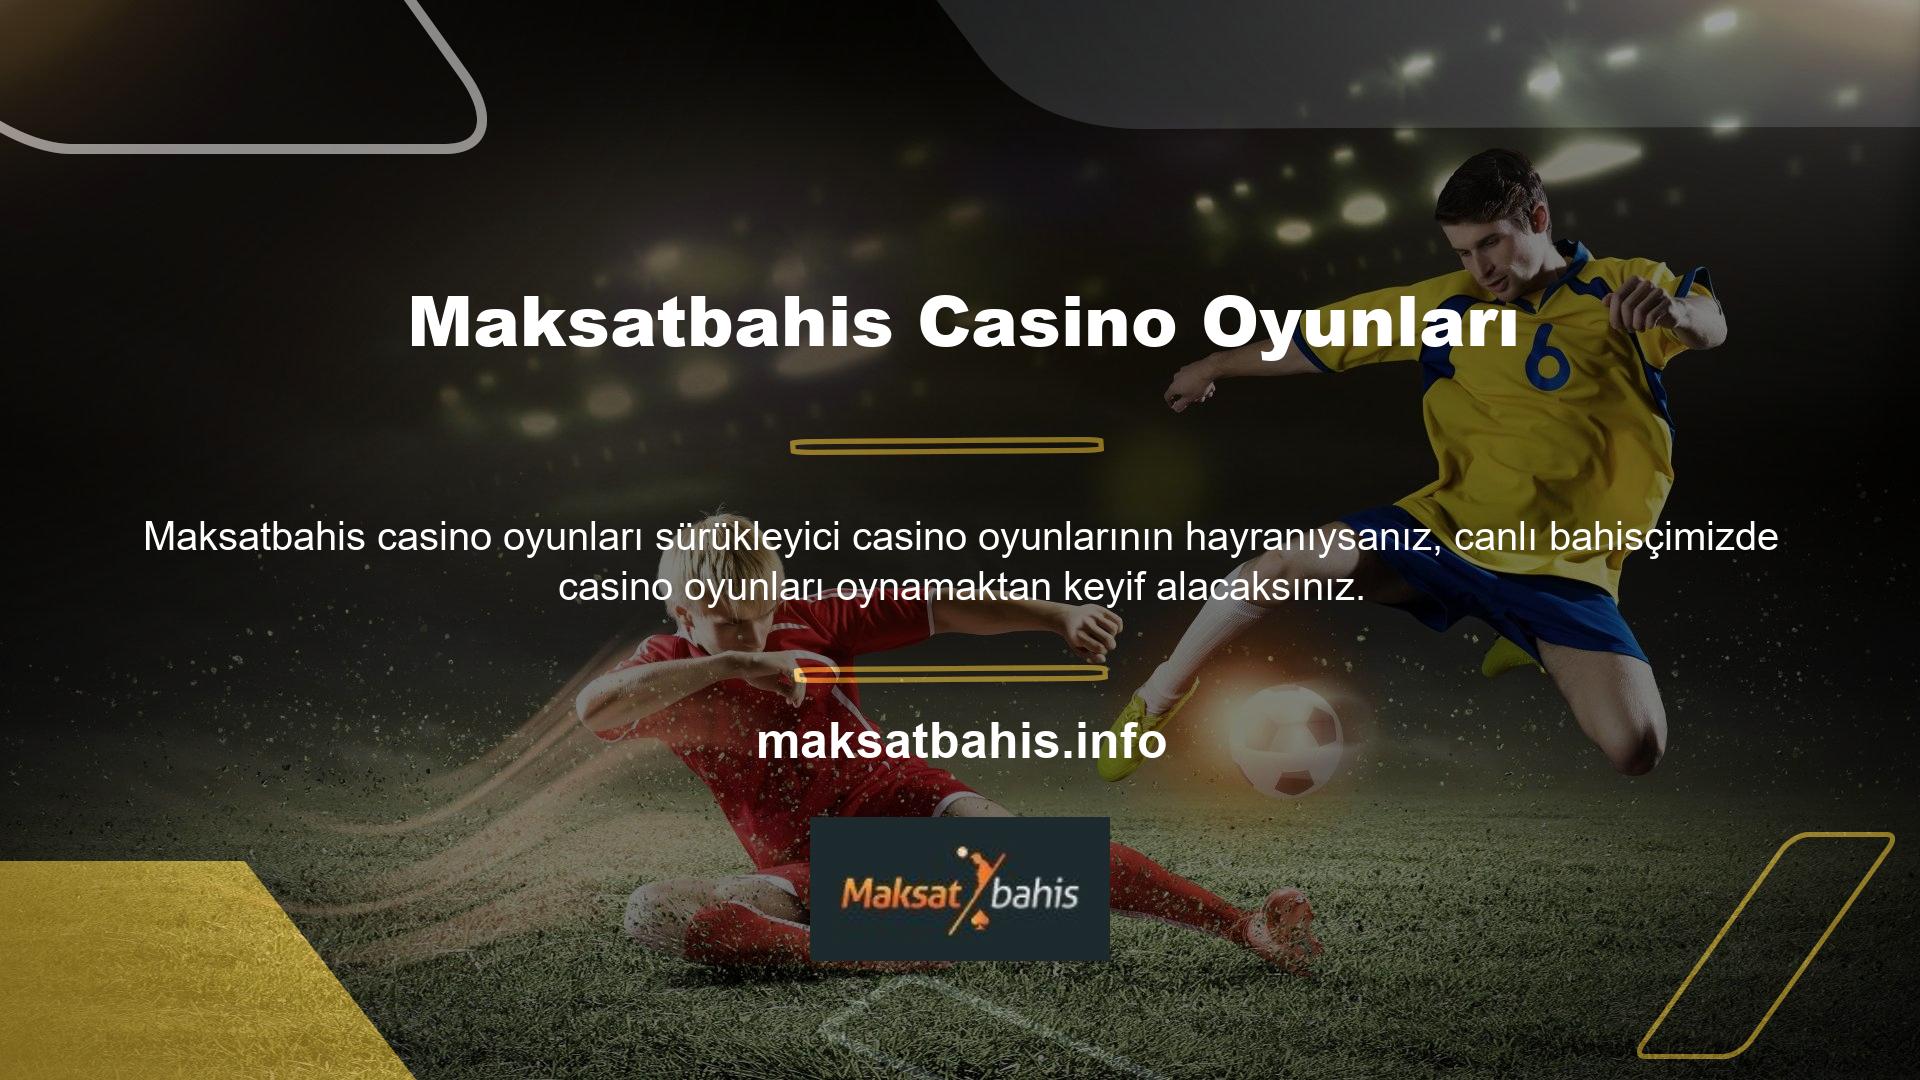 Şu anda, en iyi Türk çevrimiçi casino sitelerinin çoğu rulet, blackjack, poker, bakara ve daha fazlasını sunuyor